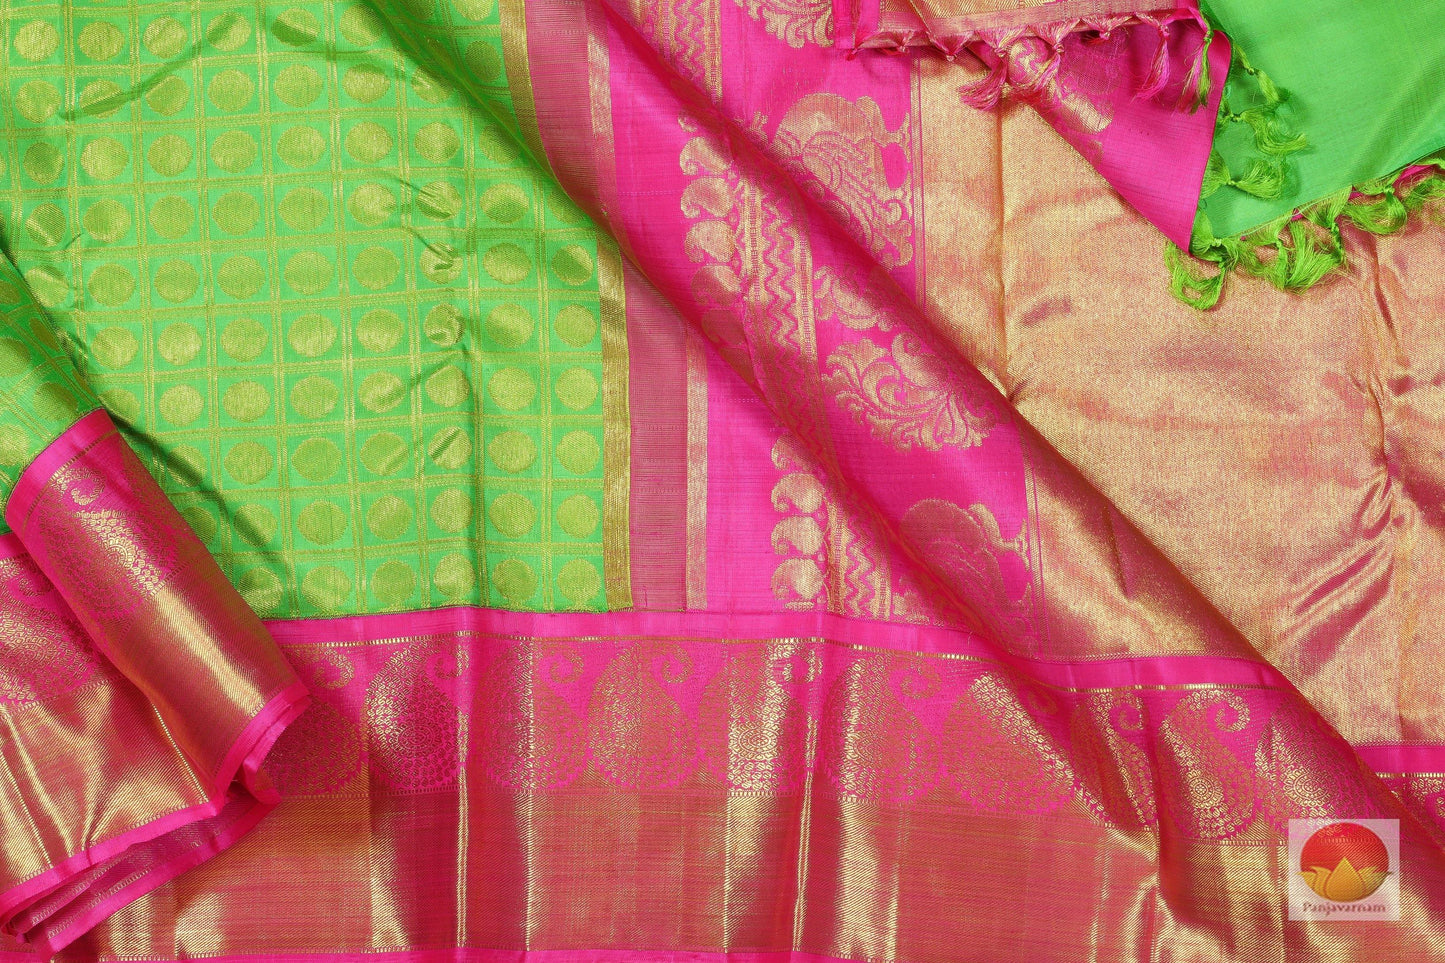 Traditional Design - Handwoven Pure Silk Kanjivaram Saree - Pure Zari - PV G 1802 - Archives - Silk Sari - Panjavarnam